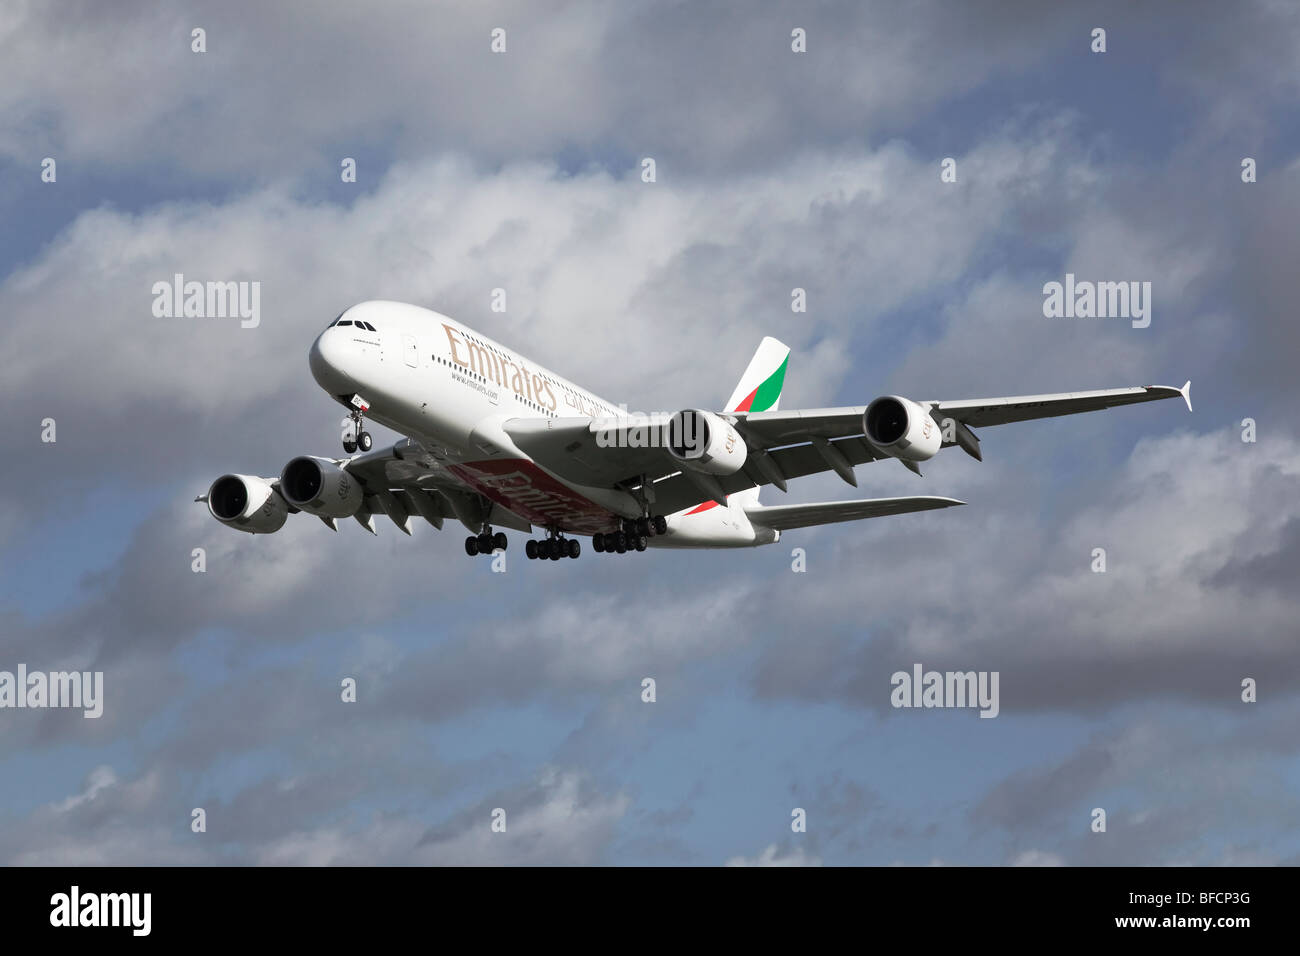 Un Airbus A380 de la super jumbo etat unis Dubaï la compagnie aérienne d'approche finale à la terre Banque D'Images